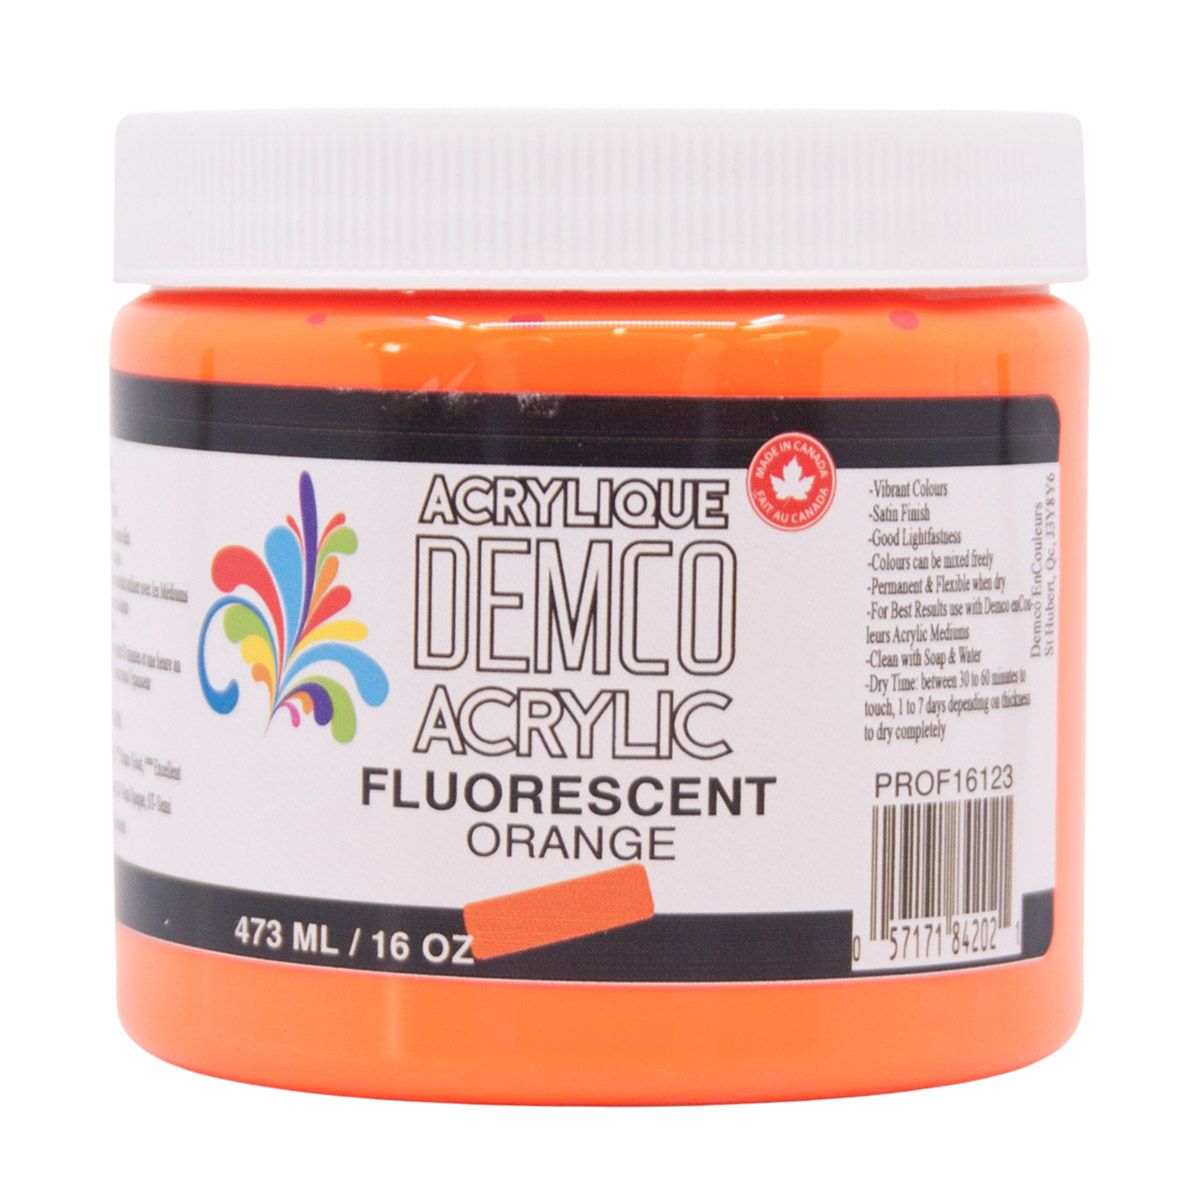 Demco Acrylic Fluorescent Orange 473ml/16oz